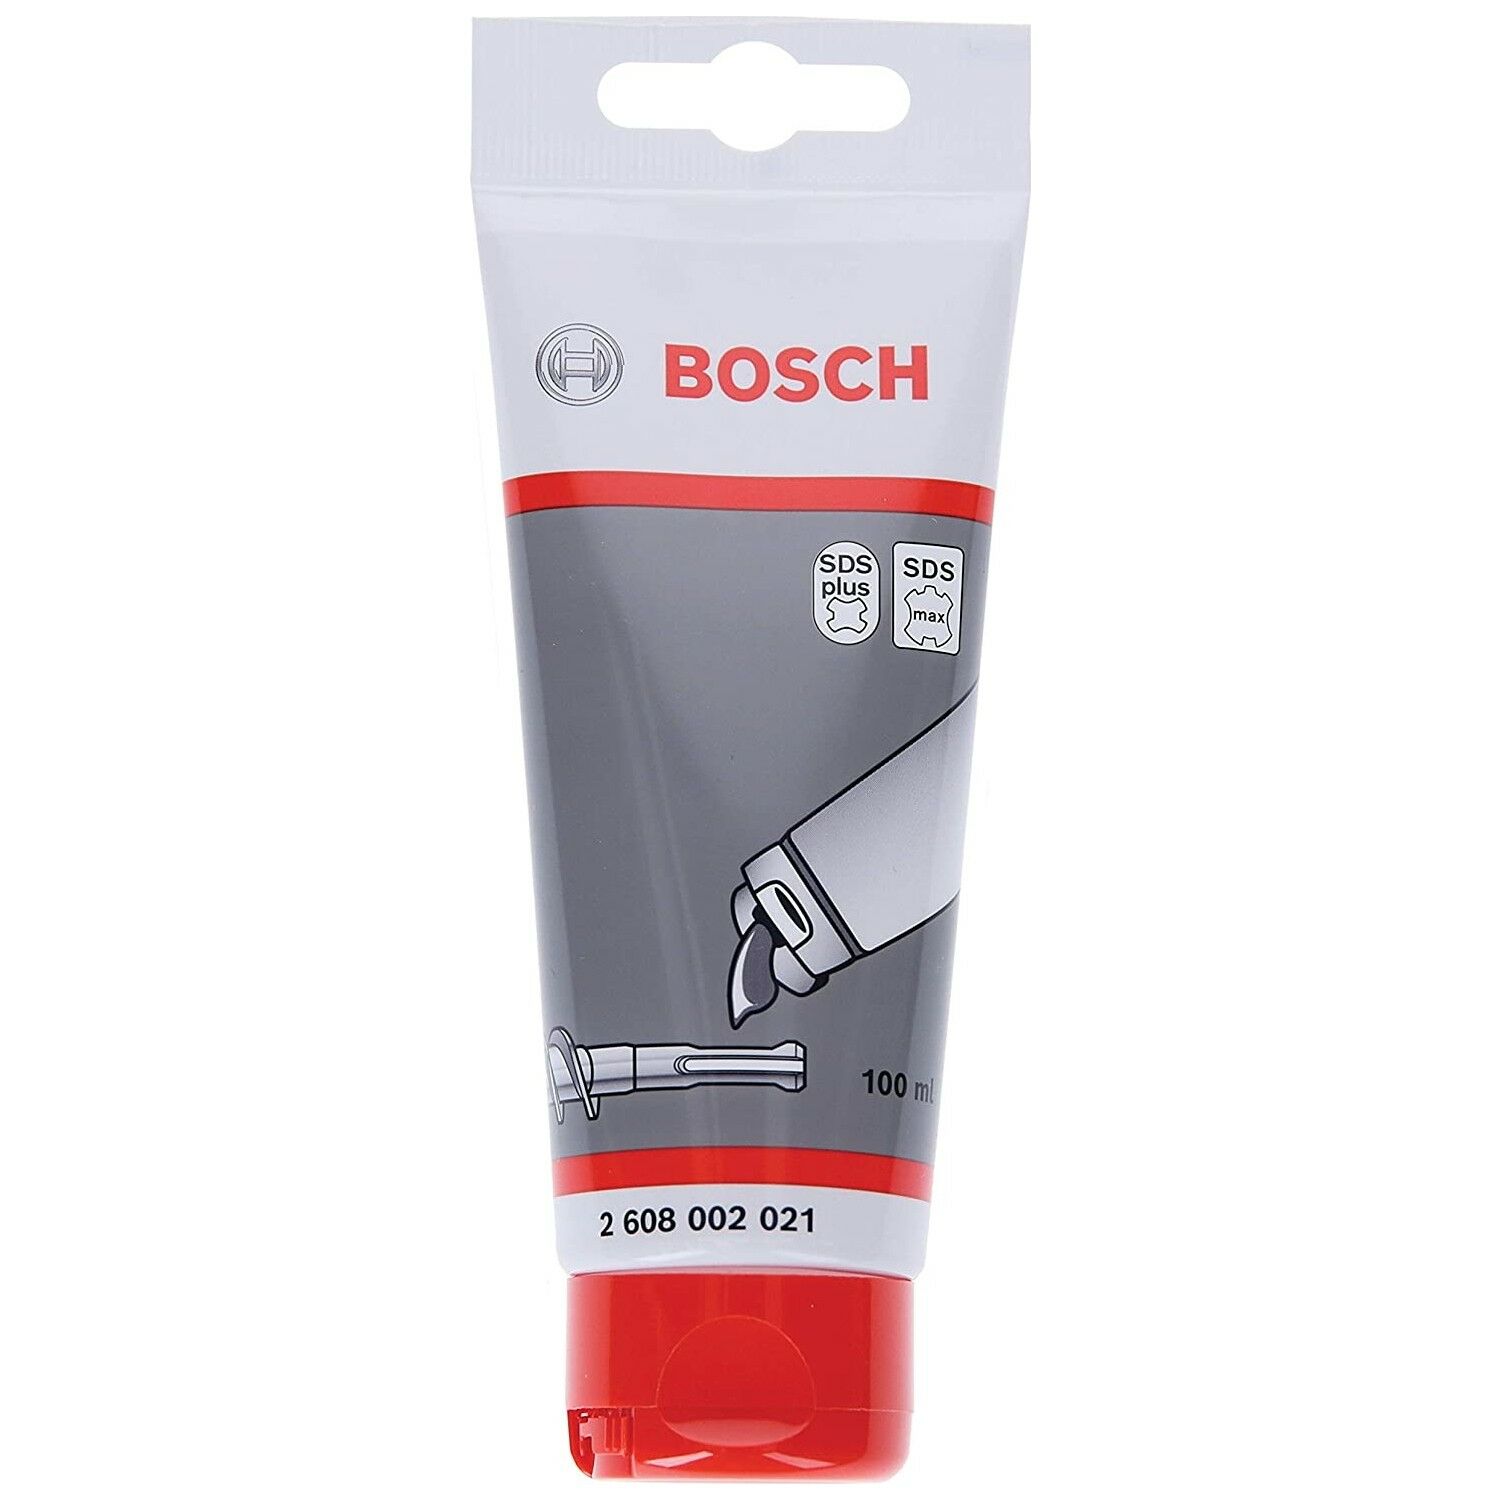 Bosch Tüp Gres Yağı 100 ml 2608002021